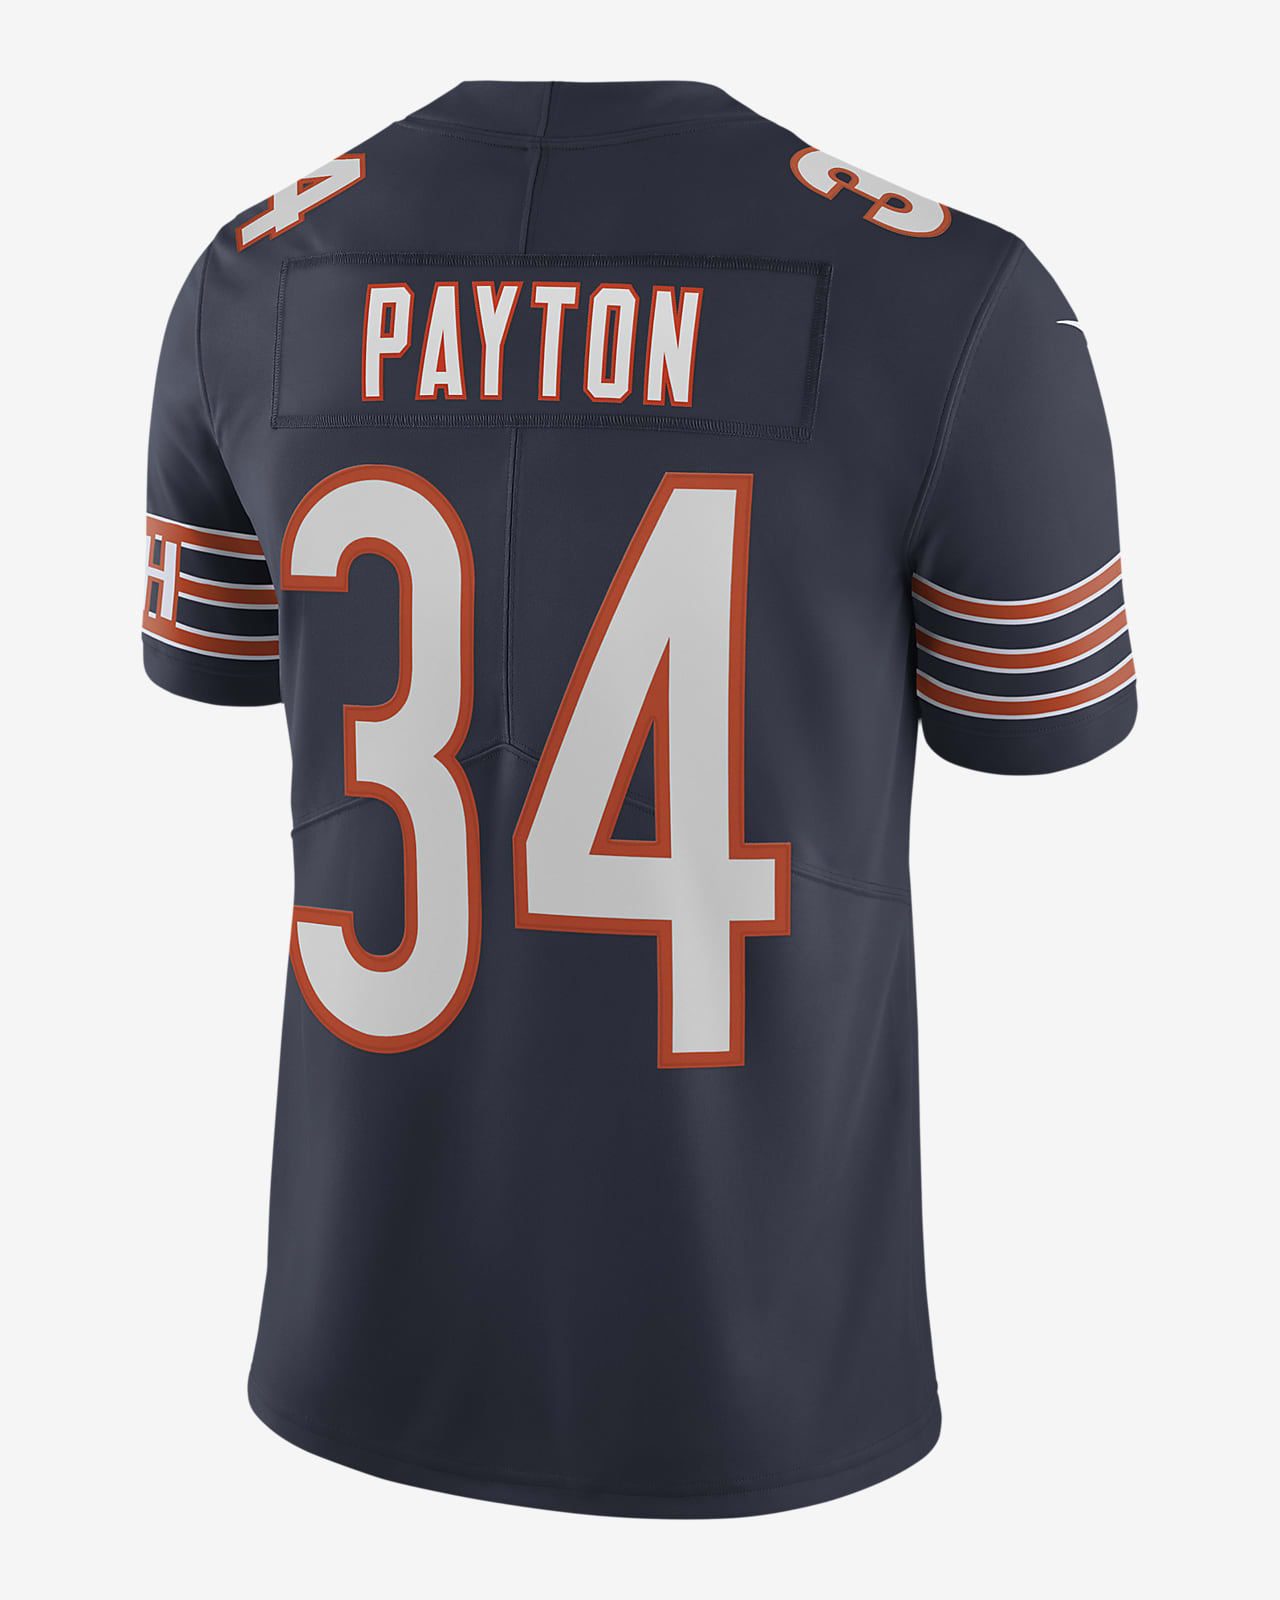 Camiseta de fútbol edición limitada para hombre NFL Chicago Bears Nike Untouchable (Walter Payton). Nike.com